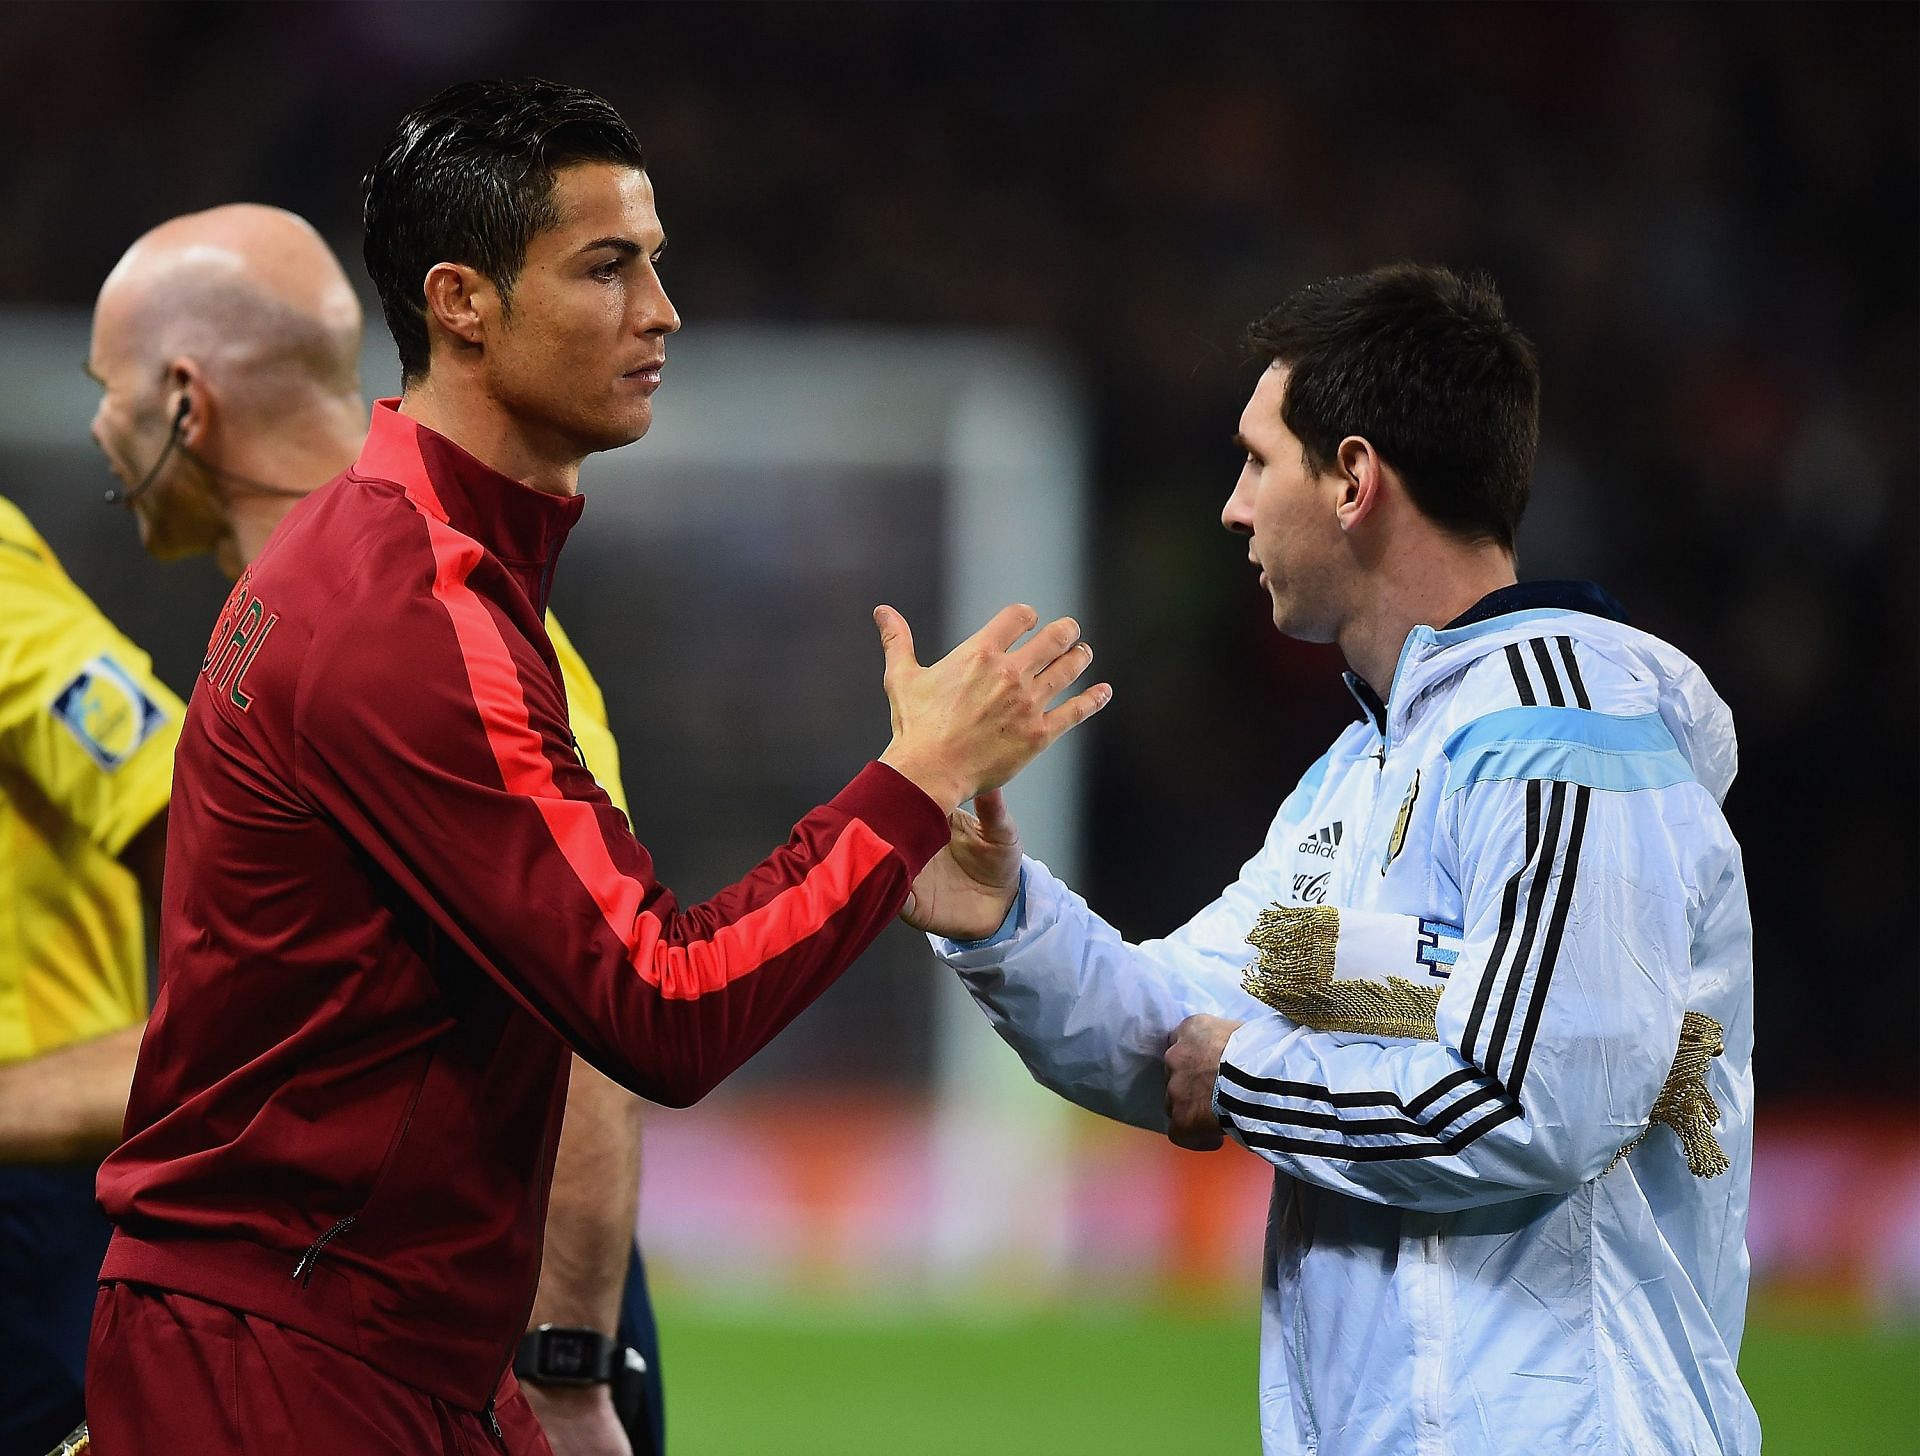 Argentina v Portugal - Cristiano Ronaldo and Lionel Messi